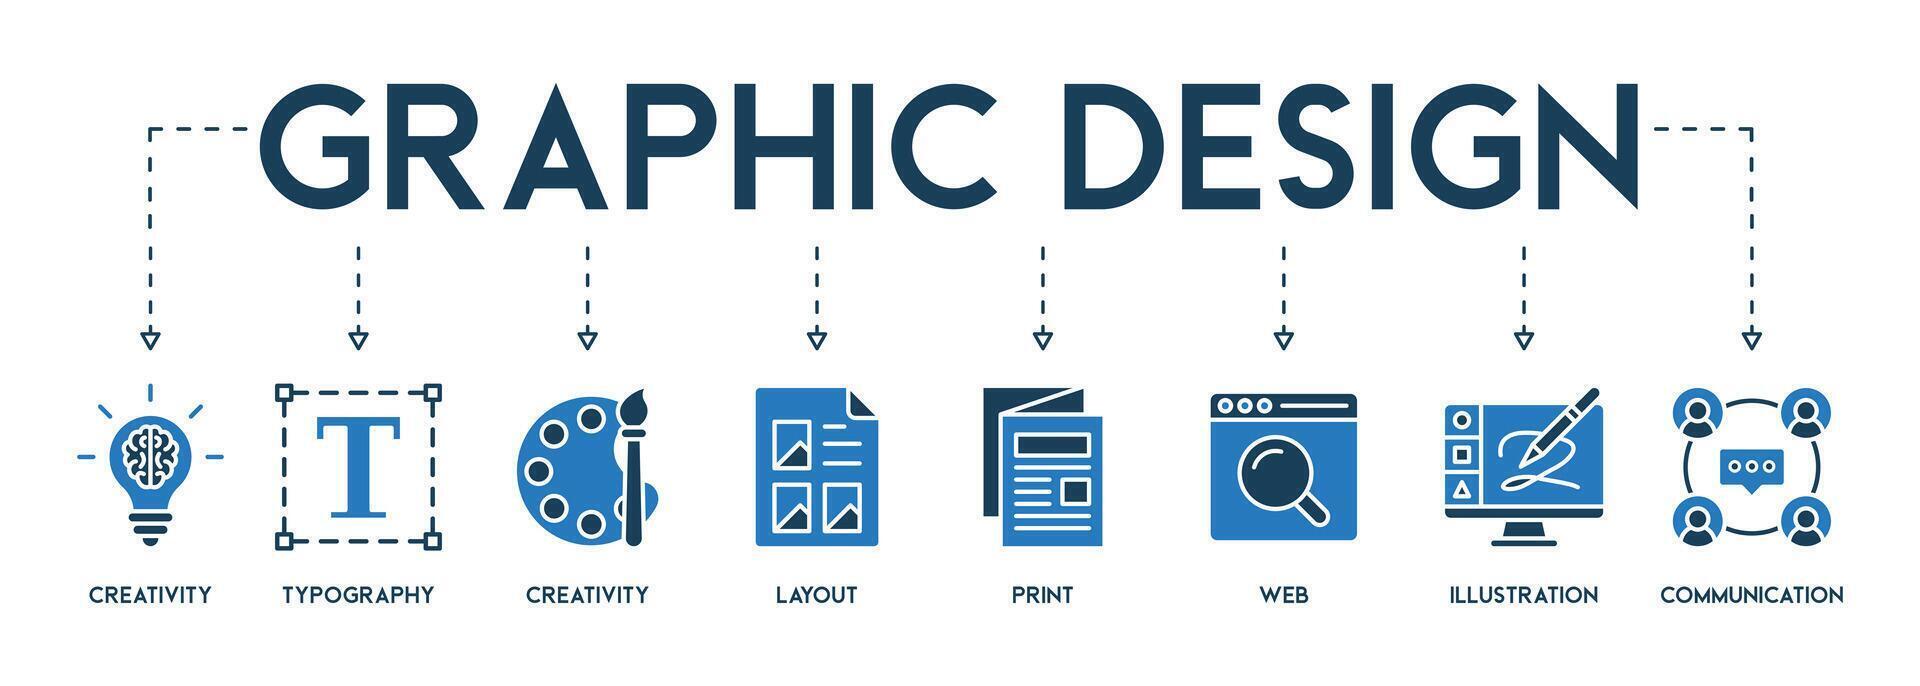 grafisch ontwerp concept banier Engels trefwoorden vector illustratie met de icoon van creativiteit, typografie, creëren, lay-out, afdrukken, web, illustratie